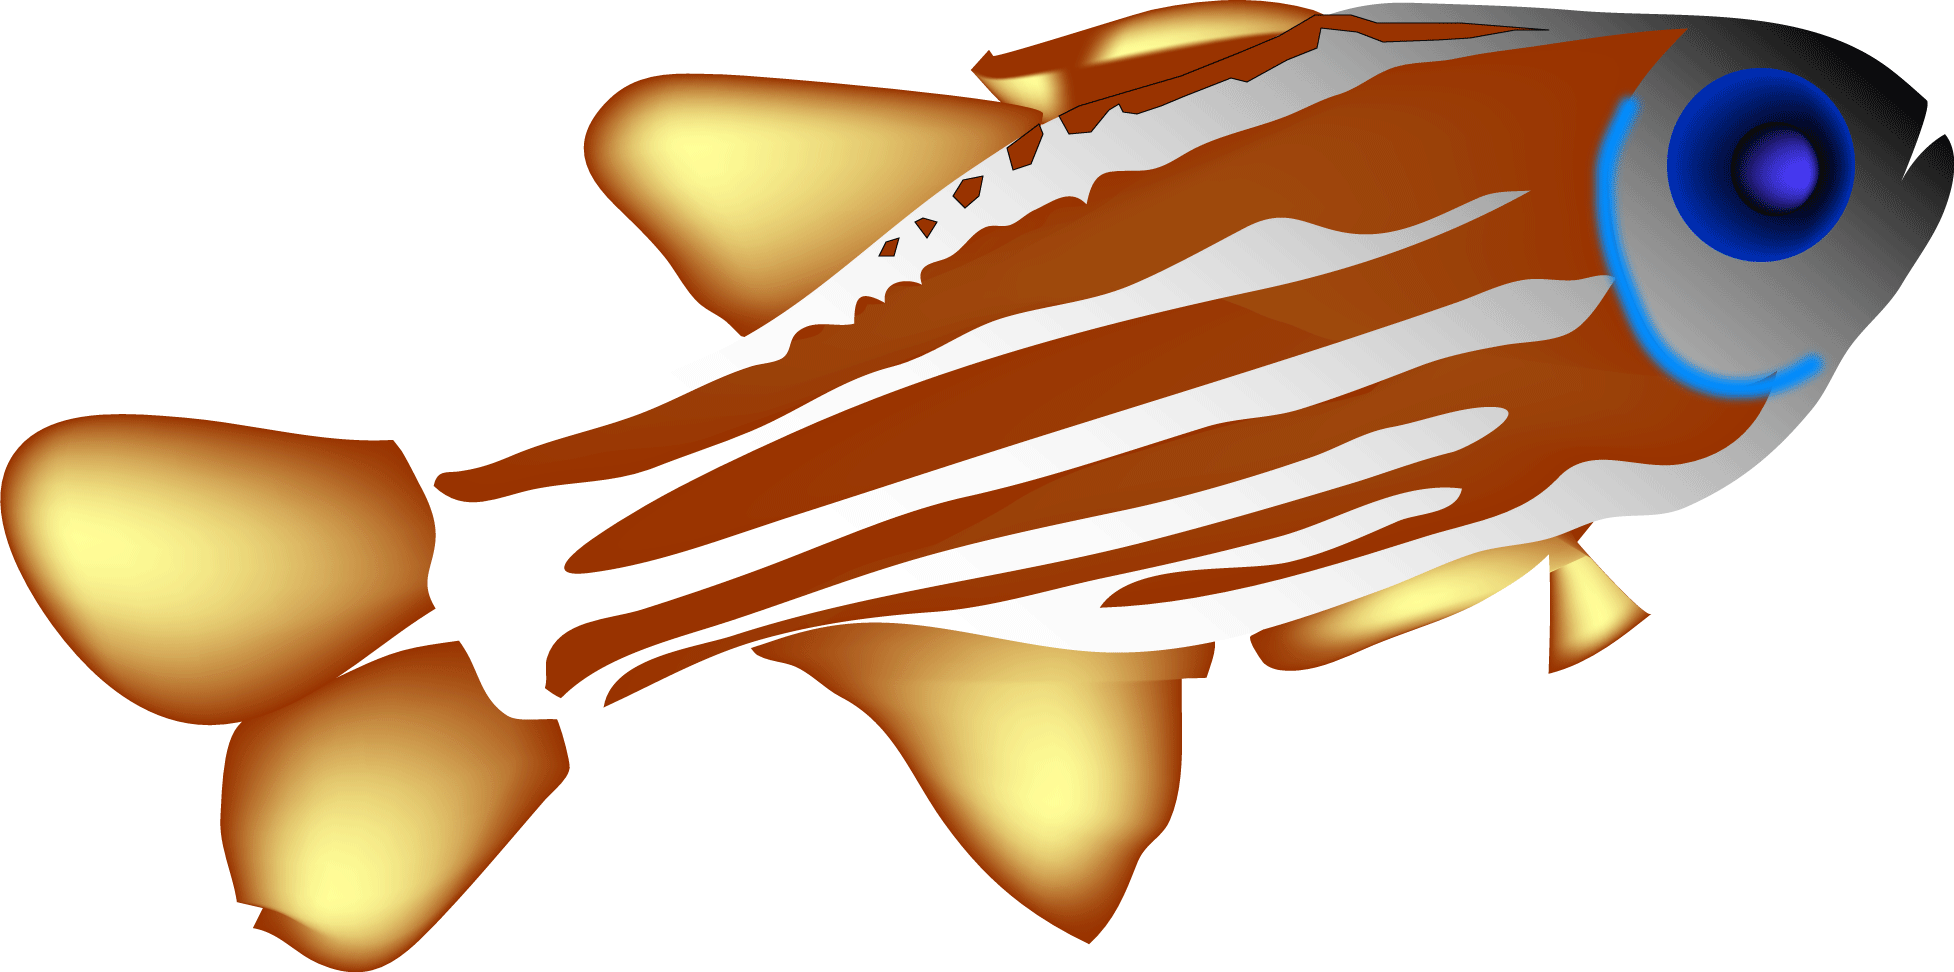 Philippines Fish